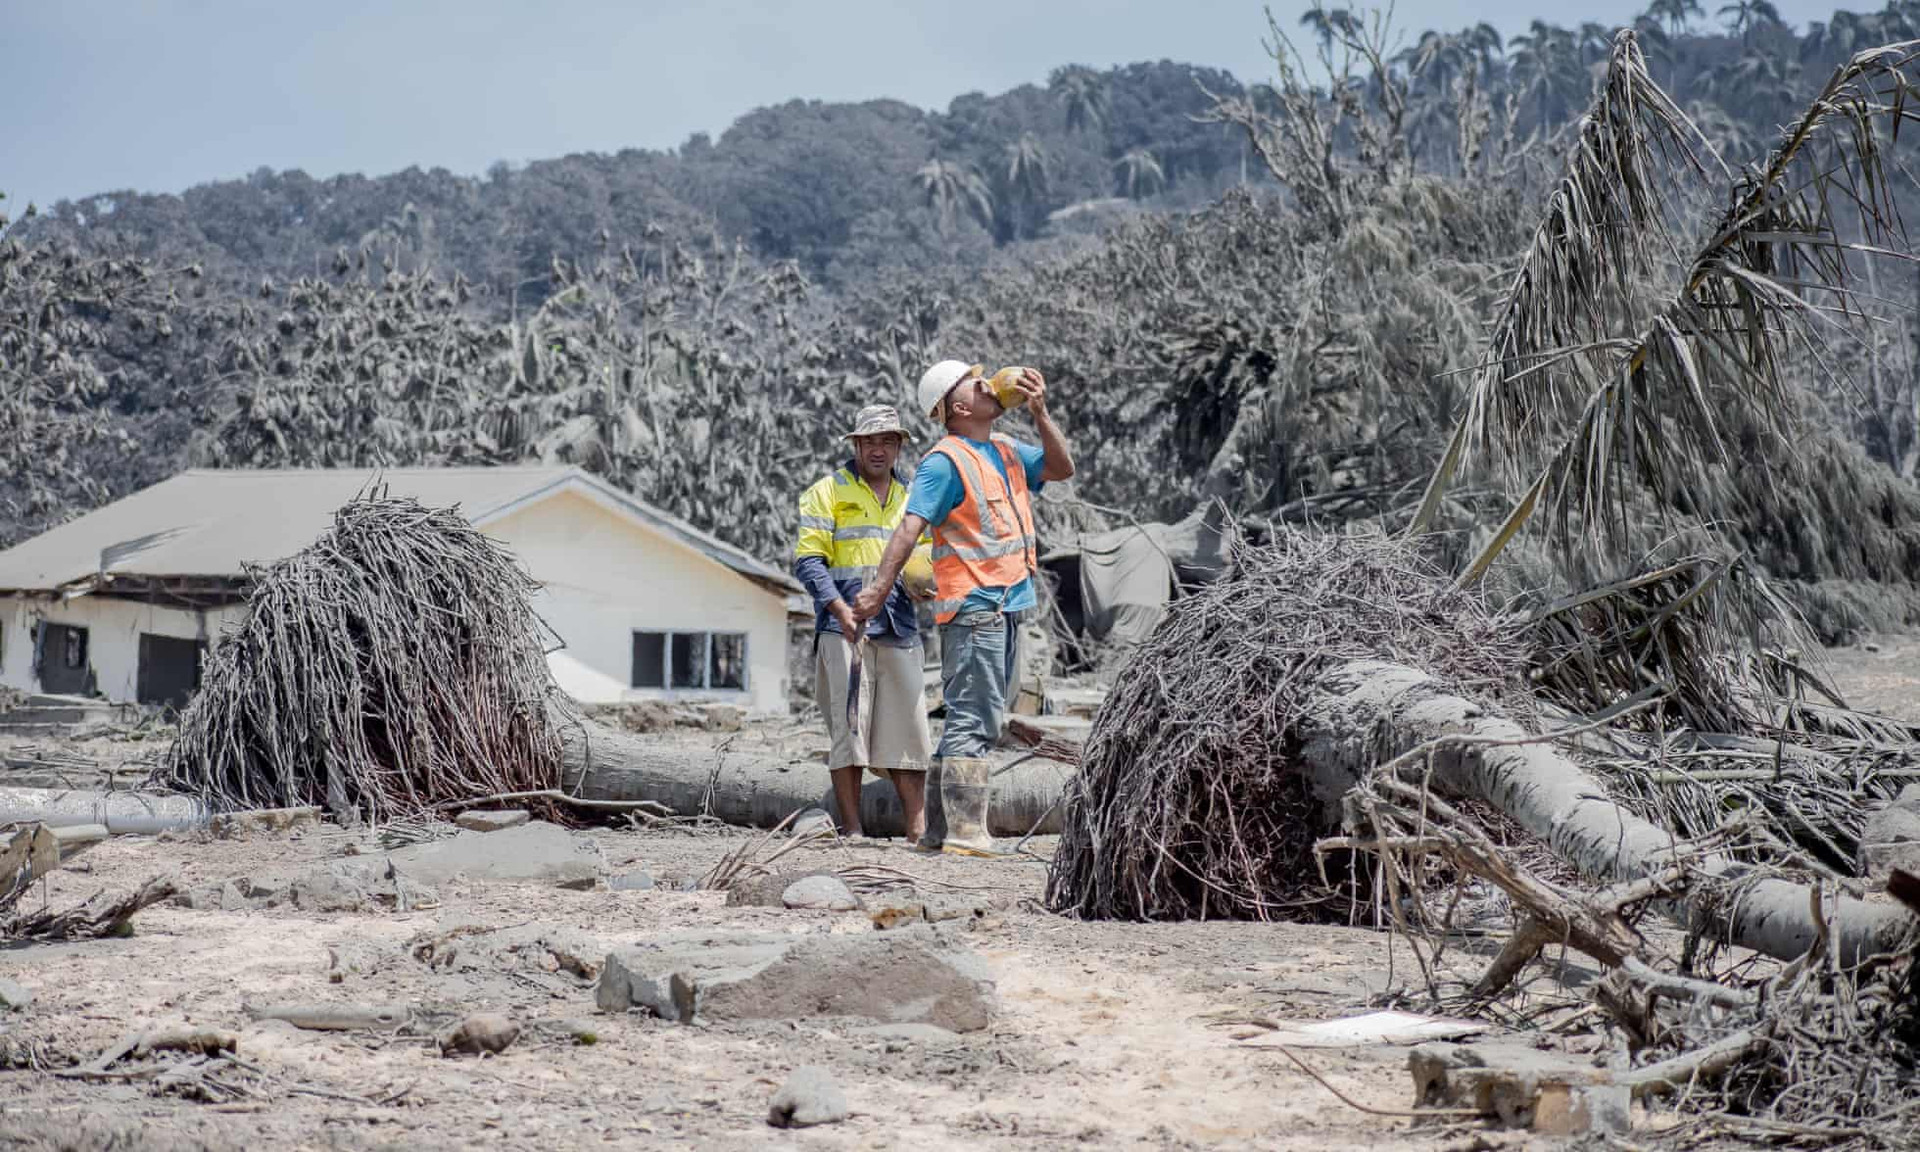 Không có nước sạch trên đảo Nomuka sau thảm họa, người dân sẽ uống nước dừa từ những cây đổ trong khi dọn dẹp tàn dư. Ảnh: Leki Lao / The Guardian.